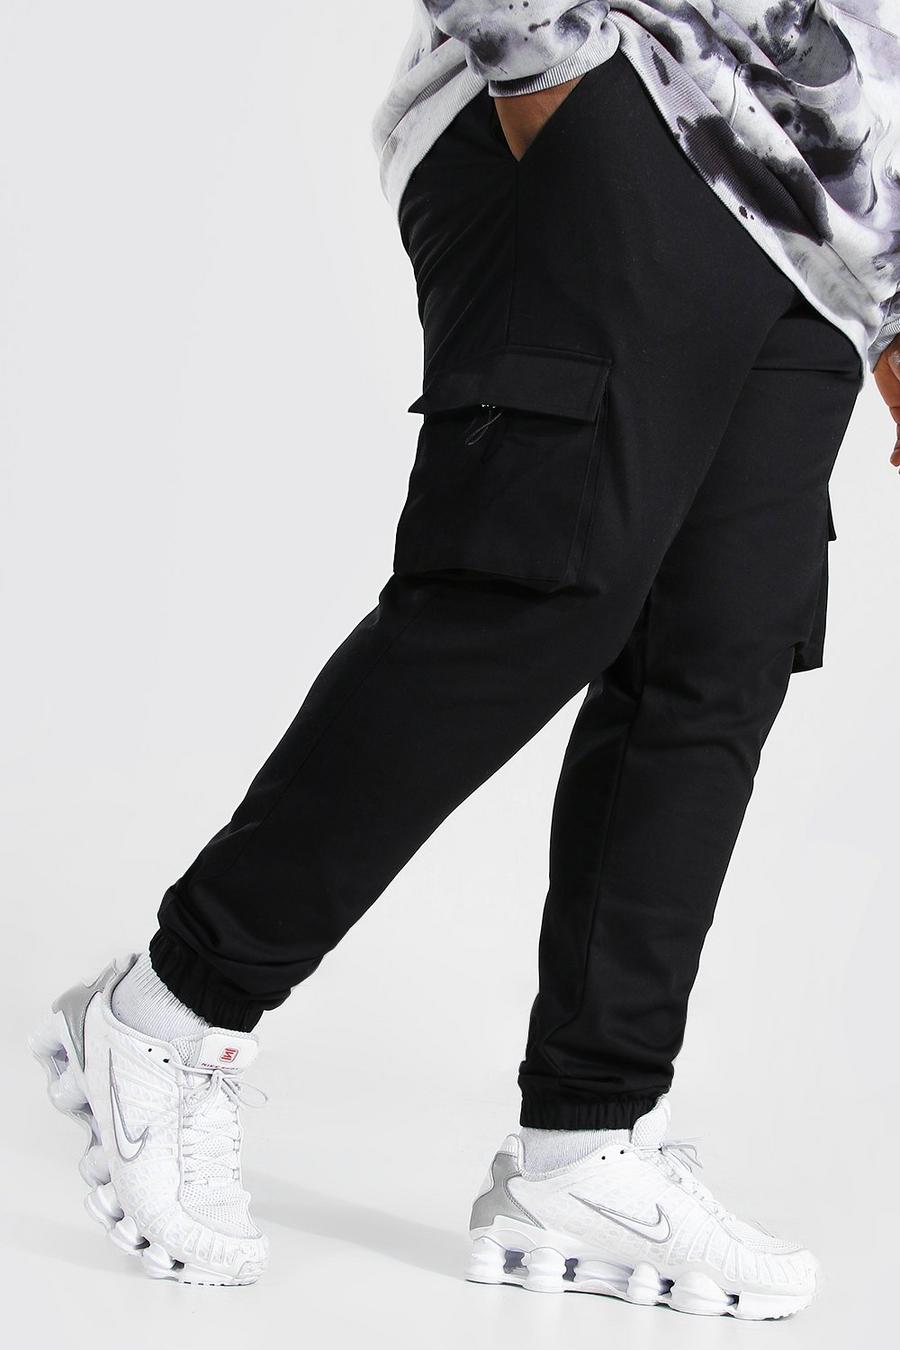 שחור negro מכנסי ריצה קרגו ארוגים מידות גדולות עם עיטור כפתור